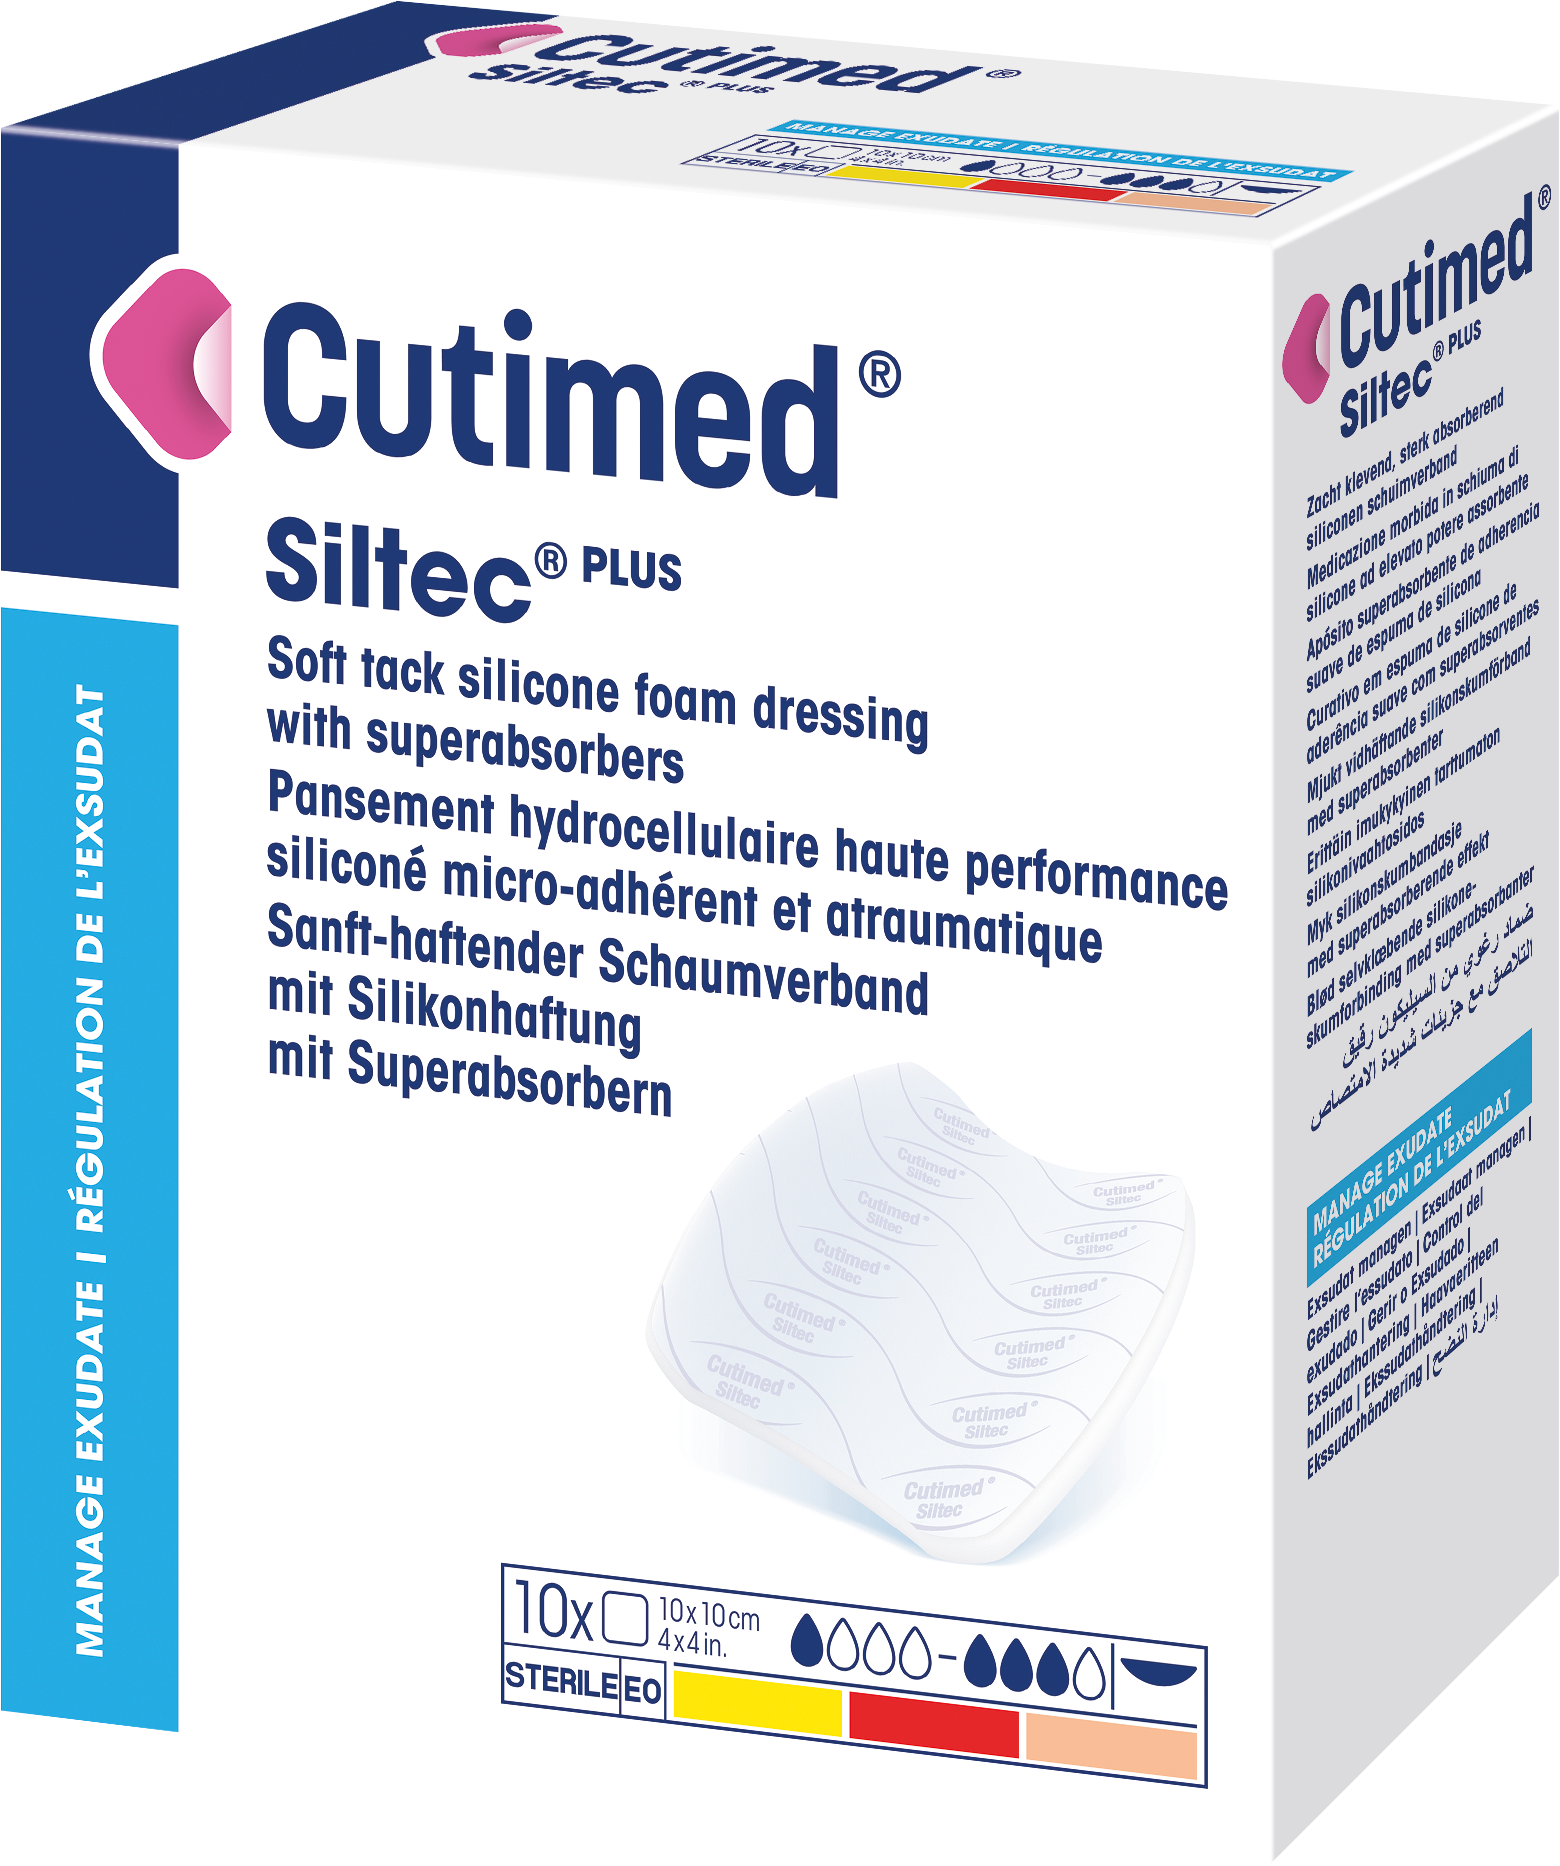 Immagine di una confezione di Cutimed® Siltec® PLUS